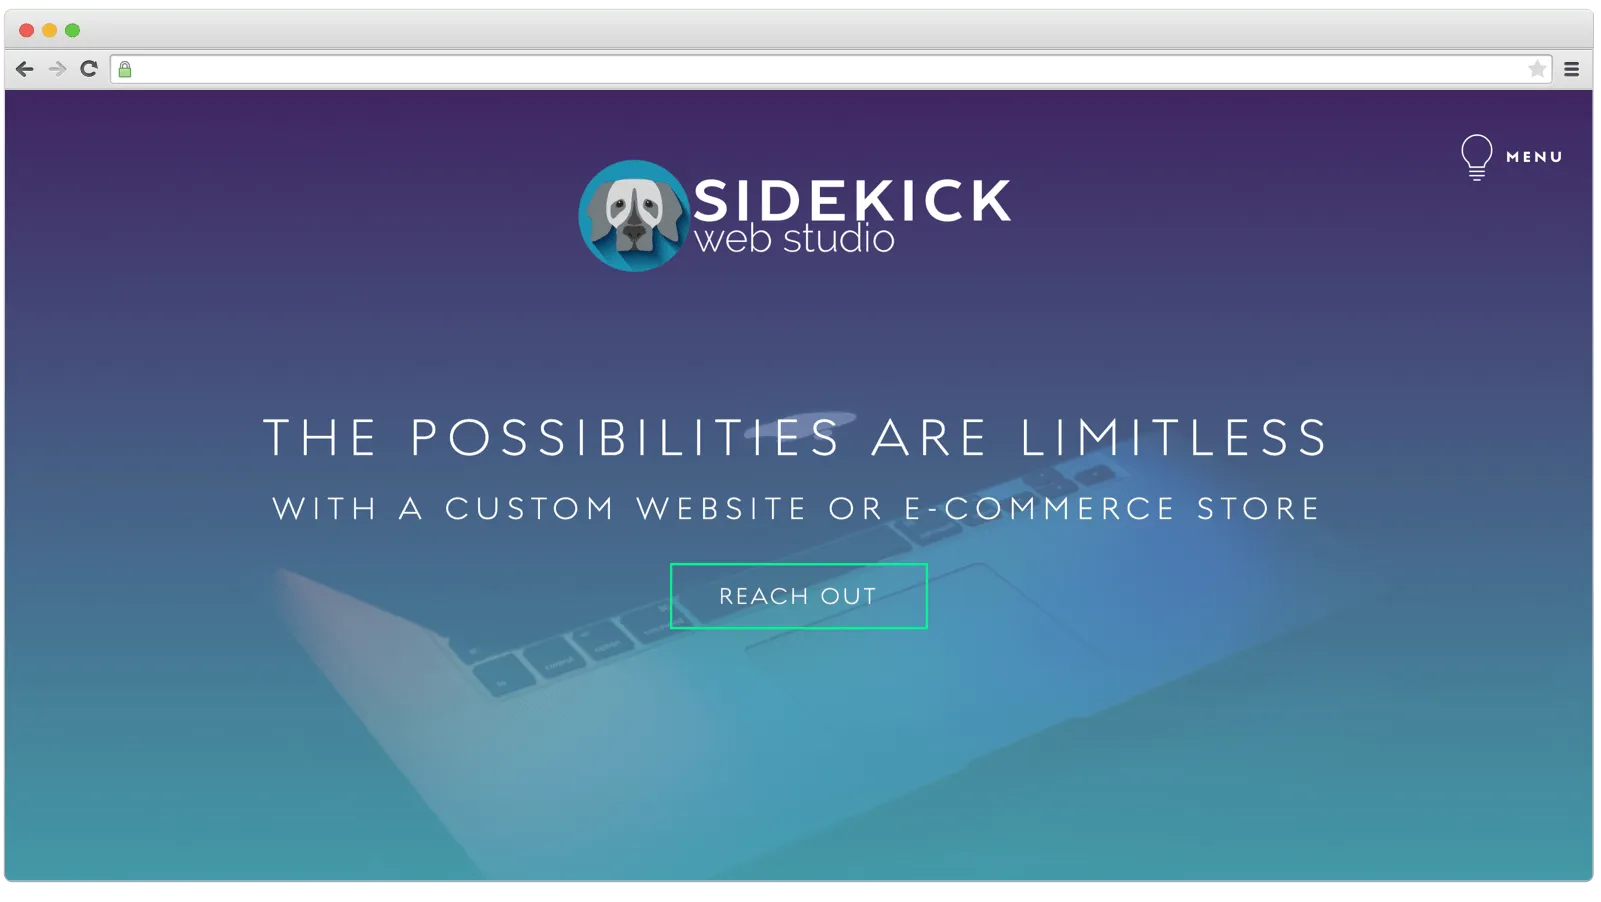 Sidekick Web Studio